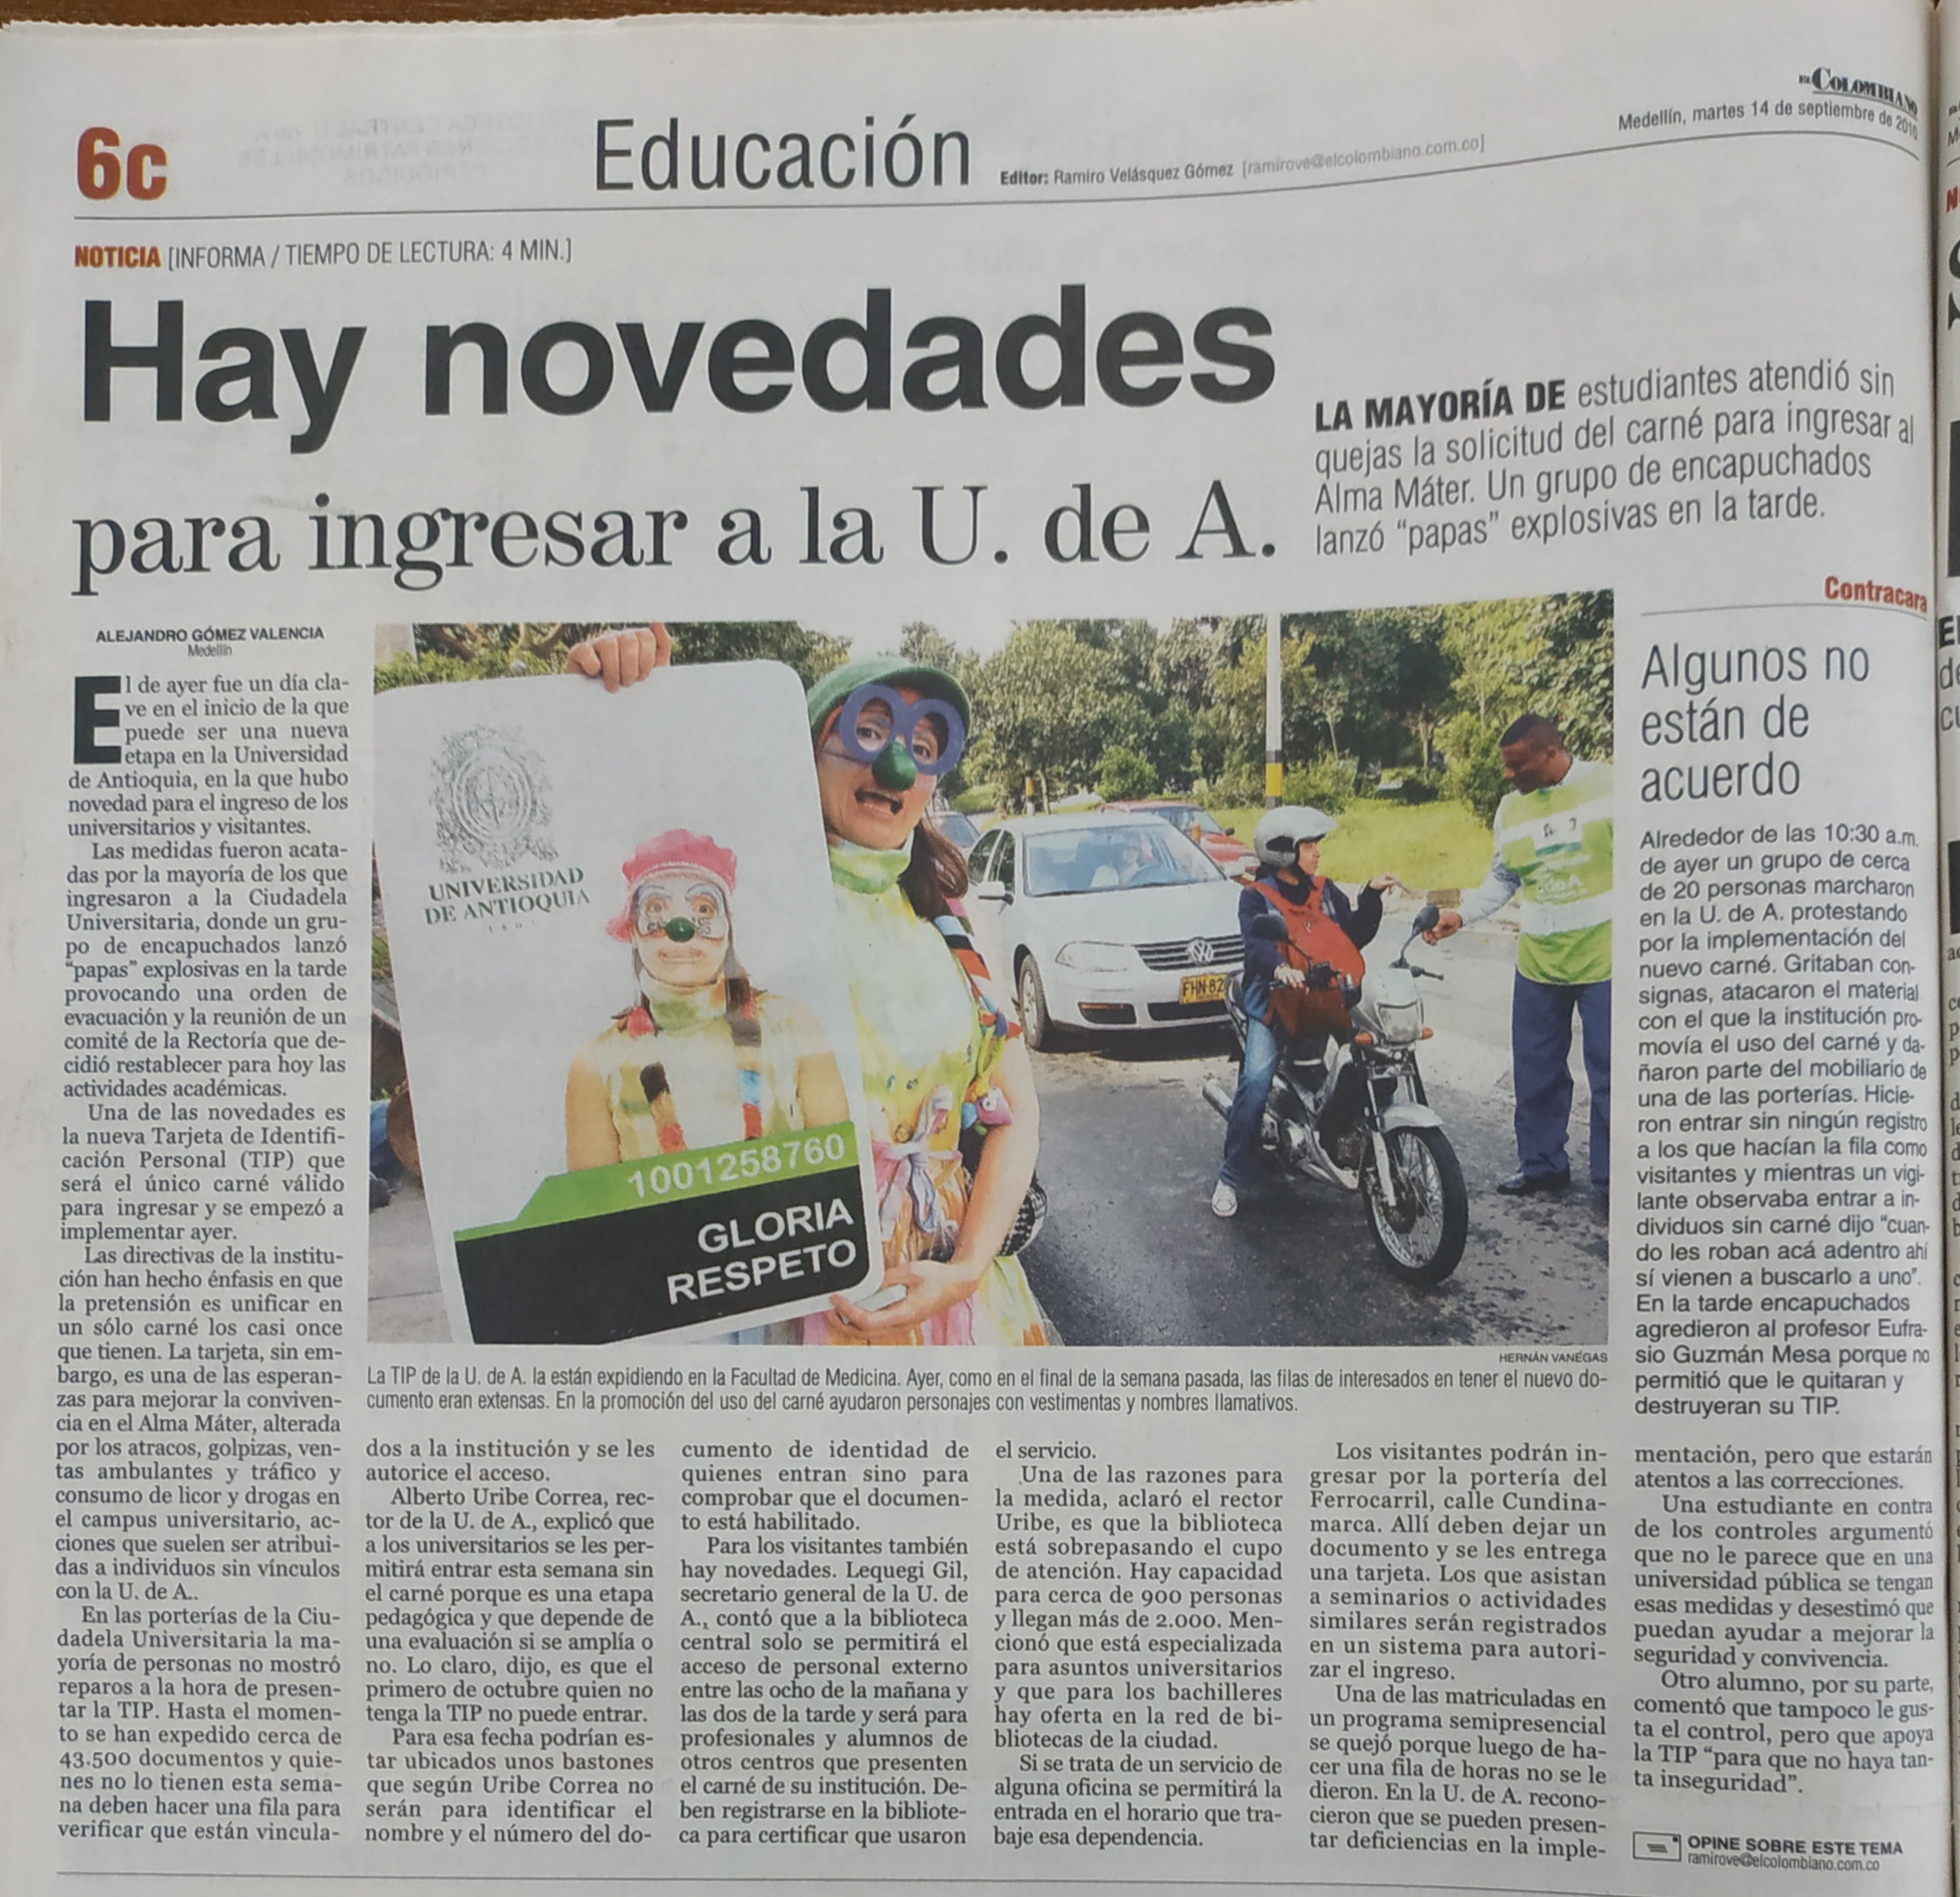 Fotografía tomada de la edición del 14 de septiembre de 2010 del periódico El Colombiano